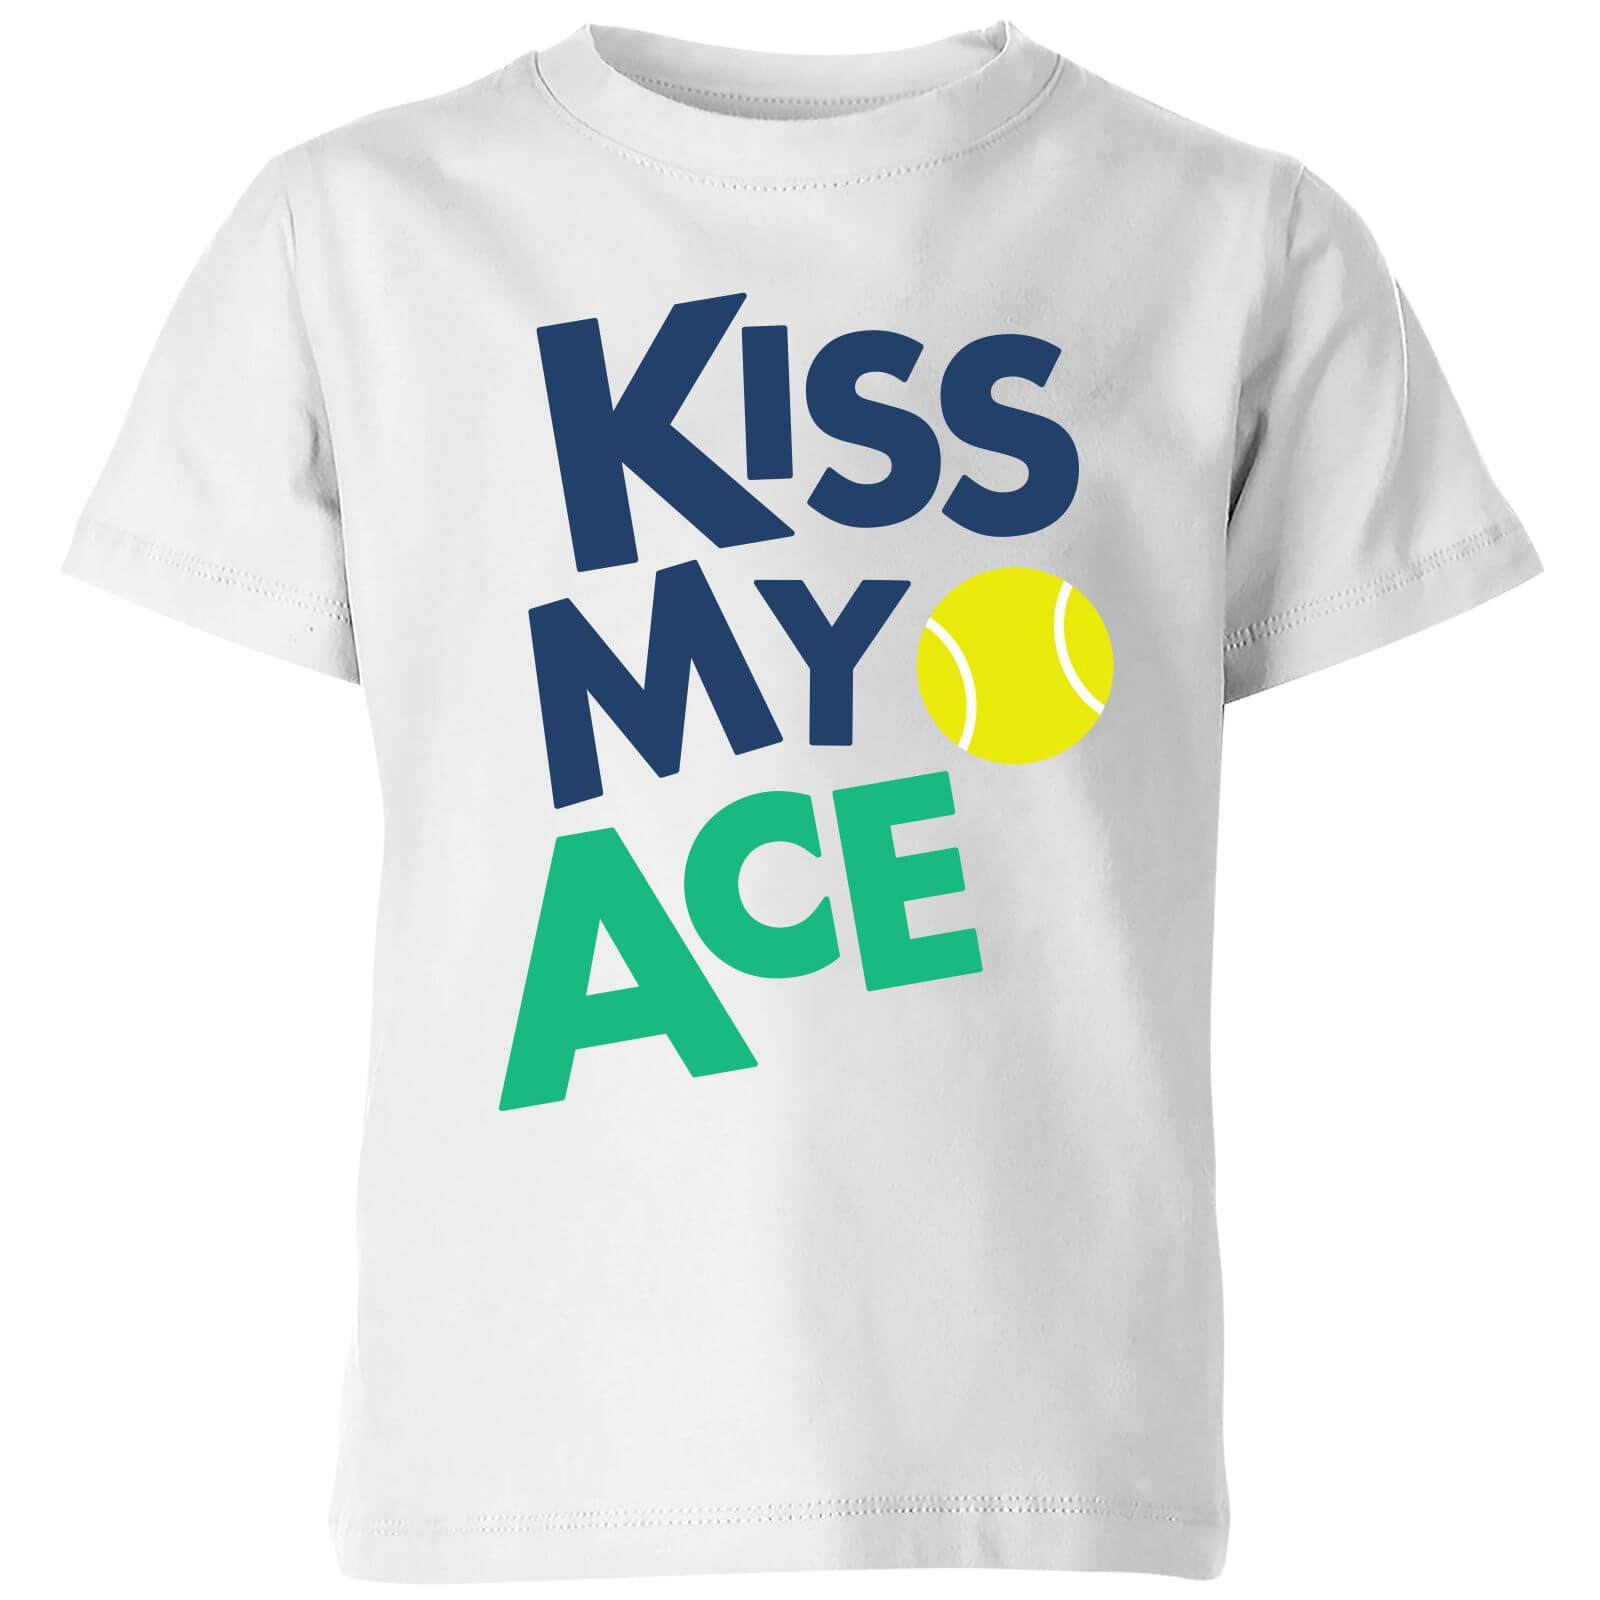 Kiss my Ace Kids' T-Shirt - White - 3-4 Years - White